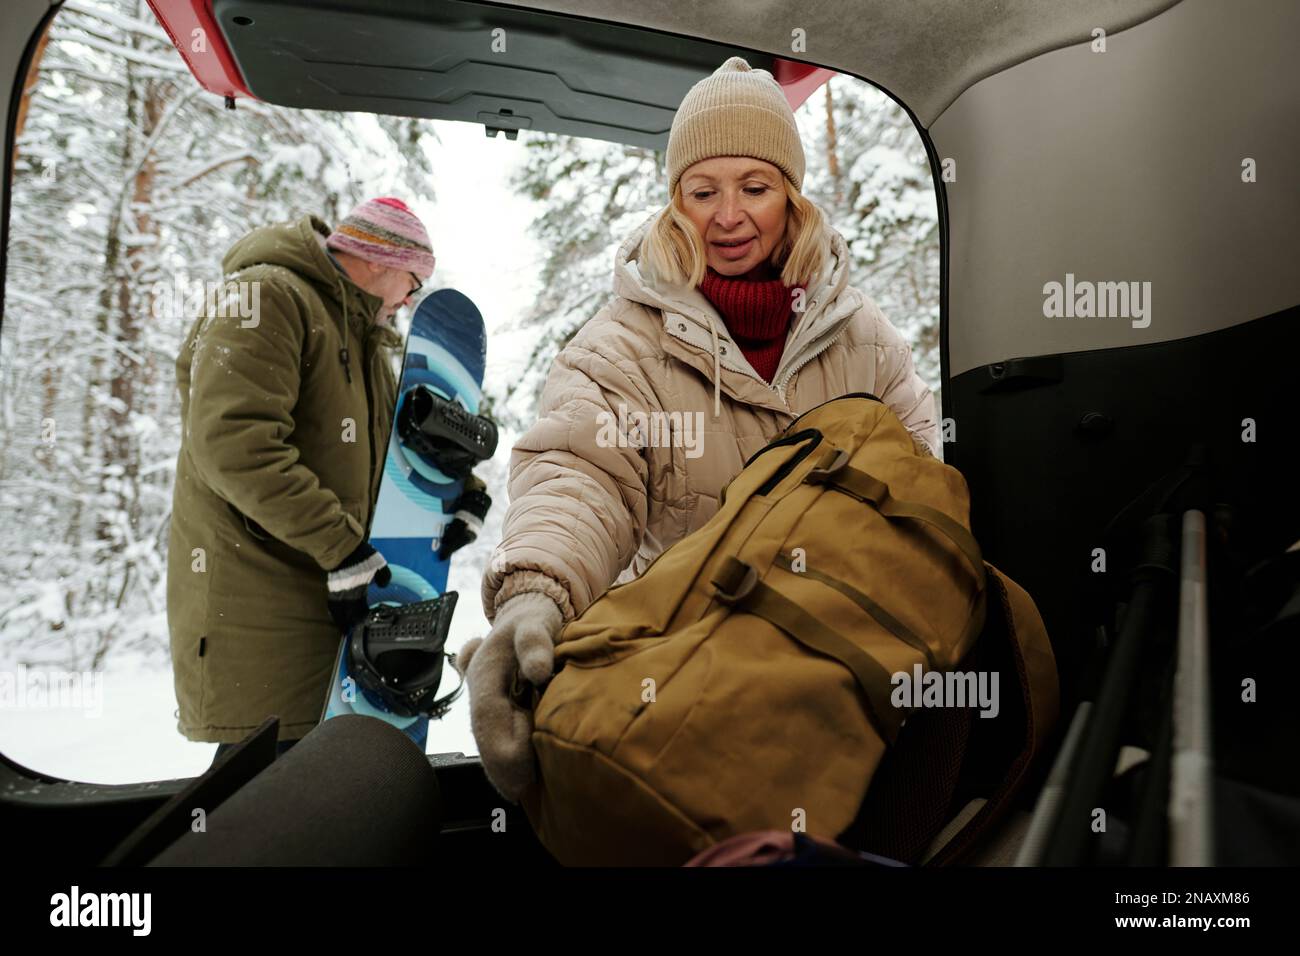 Reife Frau in Winterjacke und warmer Beanie, die den Rucksack in den Kofferraum steckt, während ihr Mann sich auf das Snowboarden im Wald vorbereitet Stockfoto